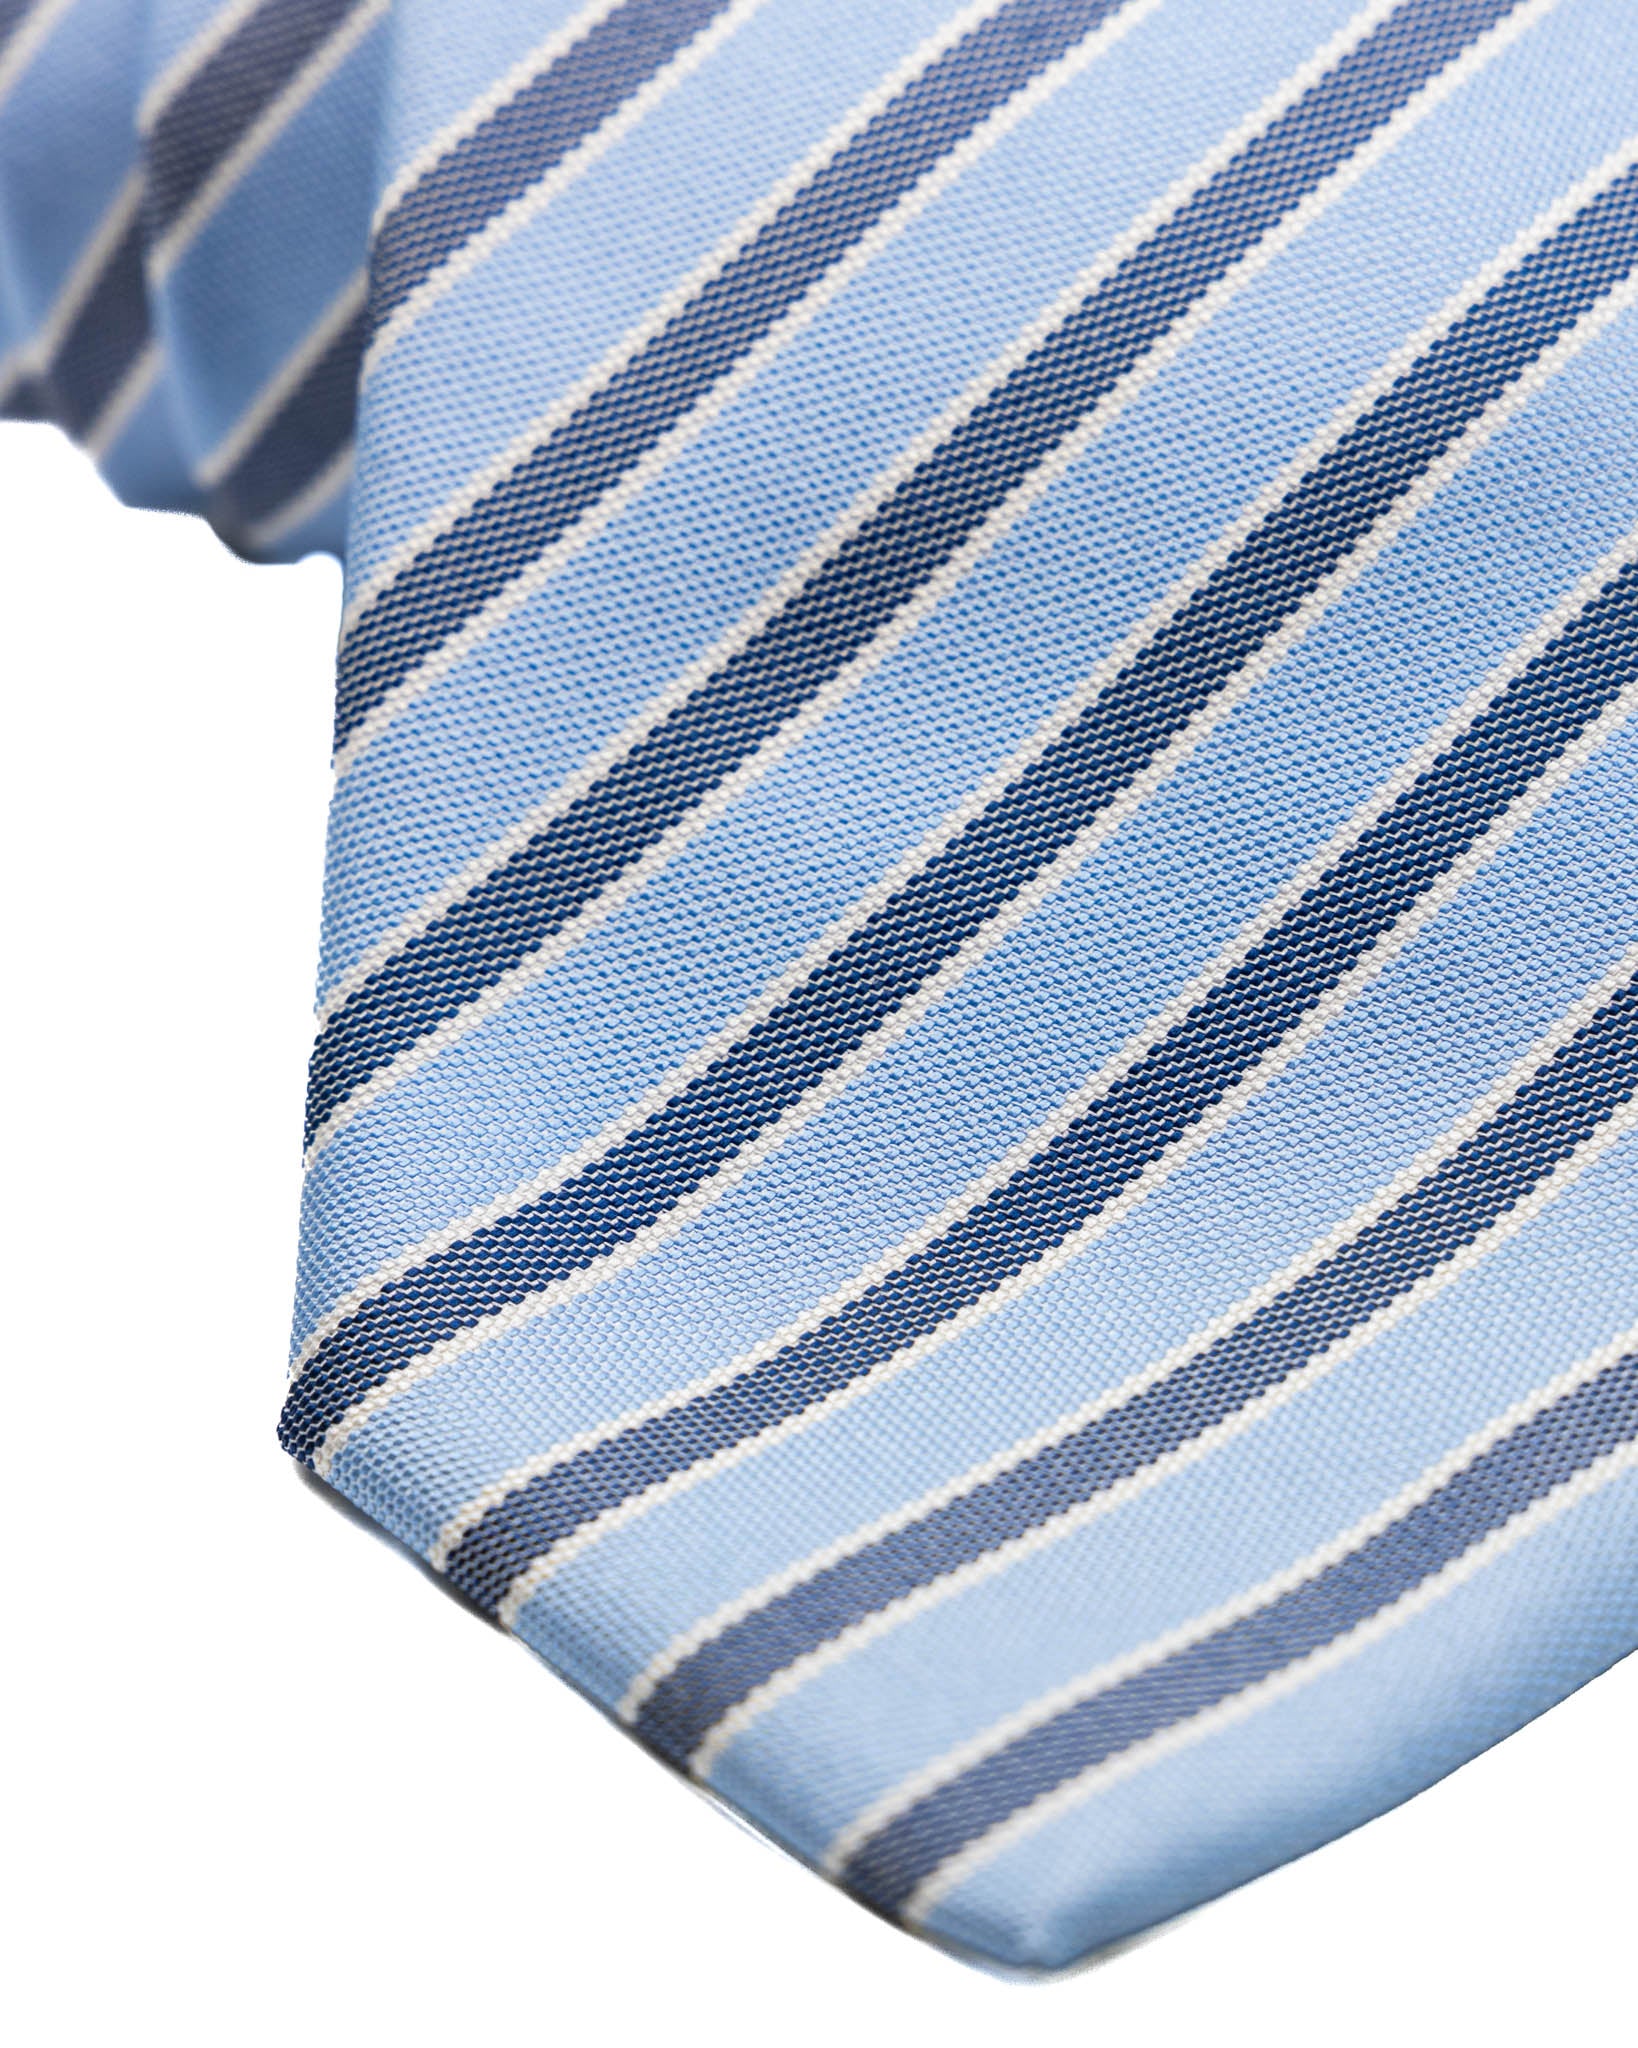 Cravate - en soie bleu clair à rayures bleues